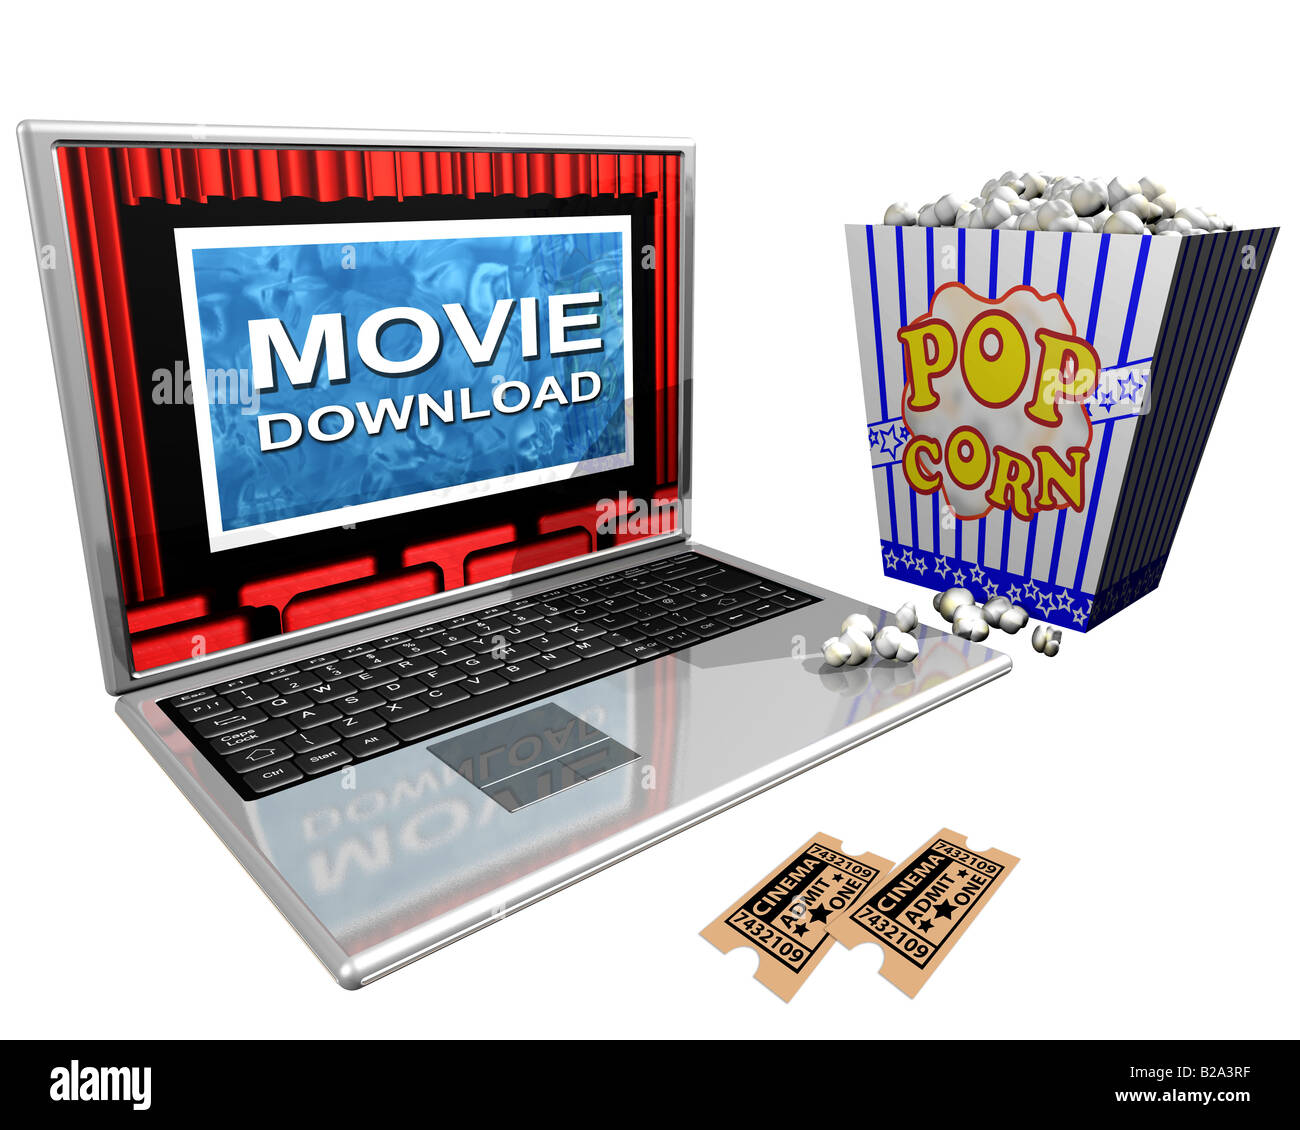 Isolierte Abbildung aus einem Laptop und einem Eimer Popcorn porträtiert der Film-Downloads über das Internet Stockfoto